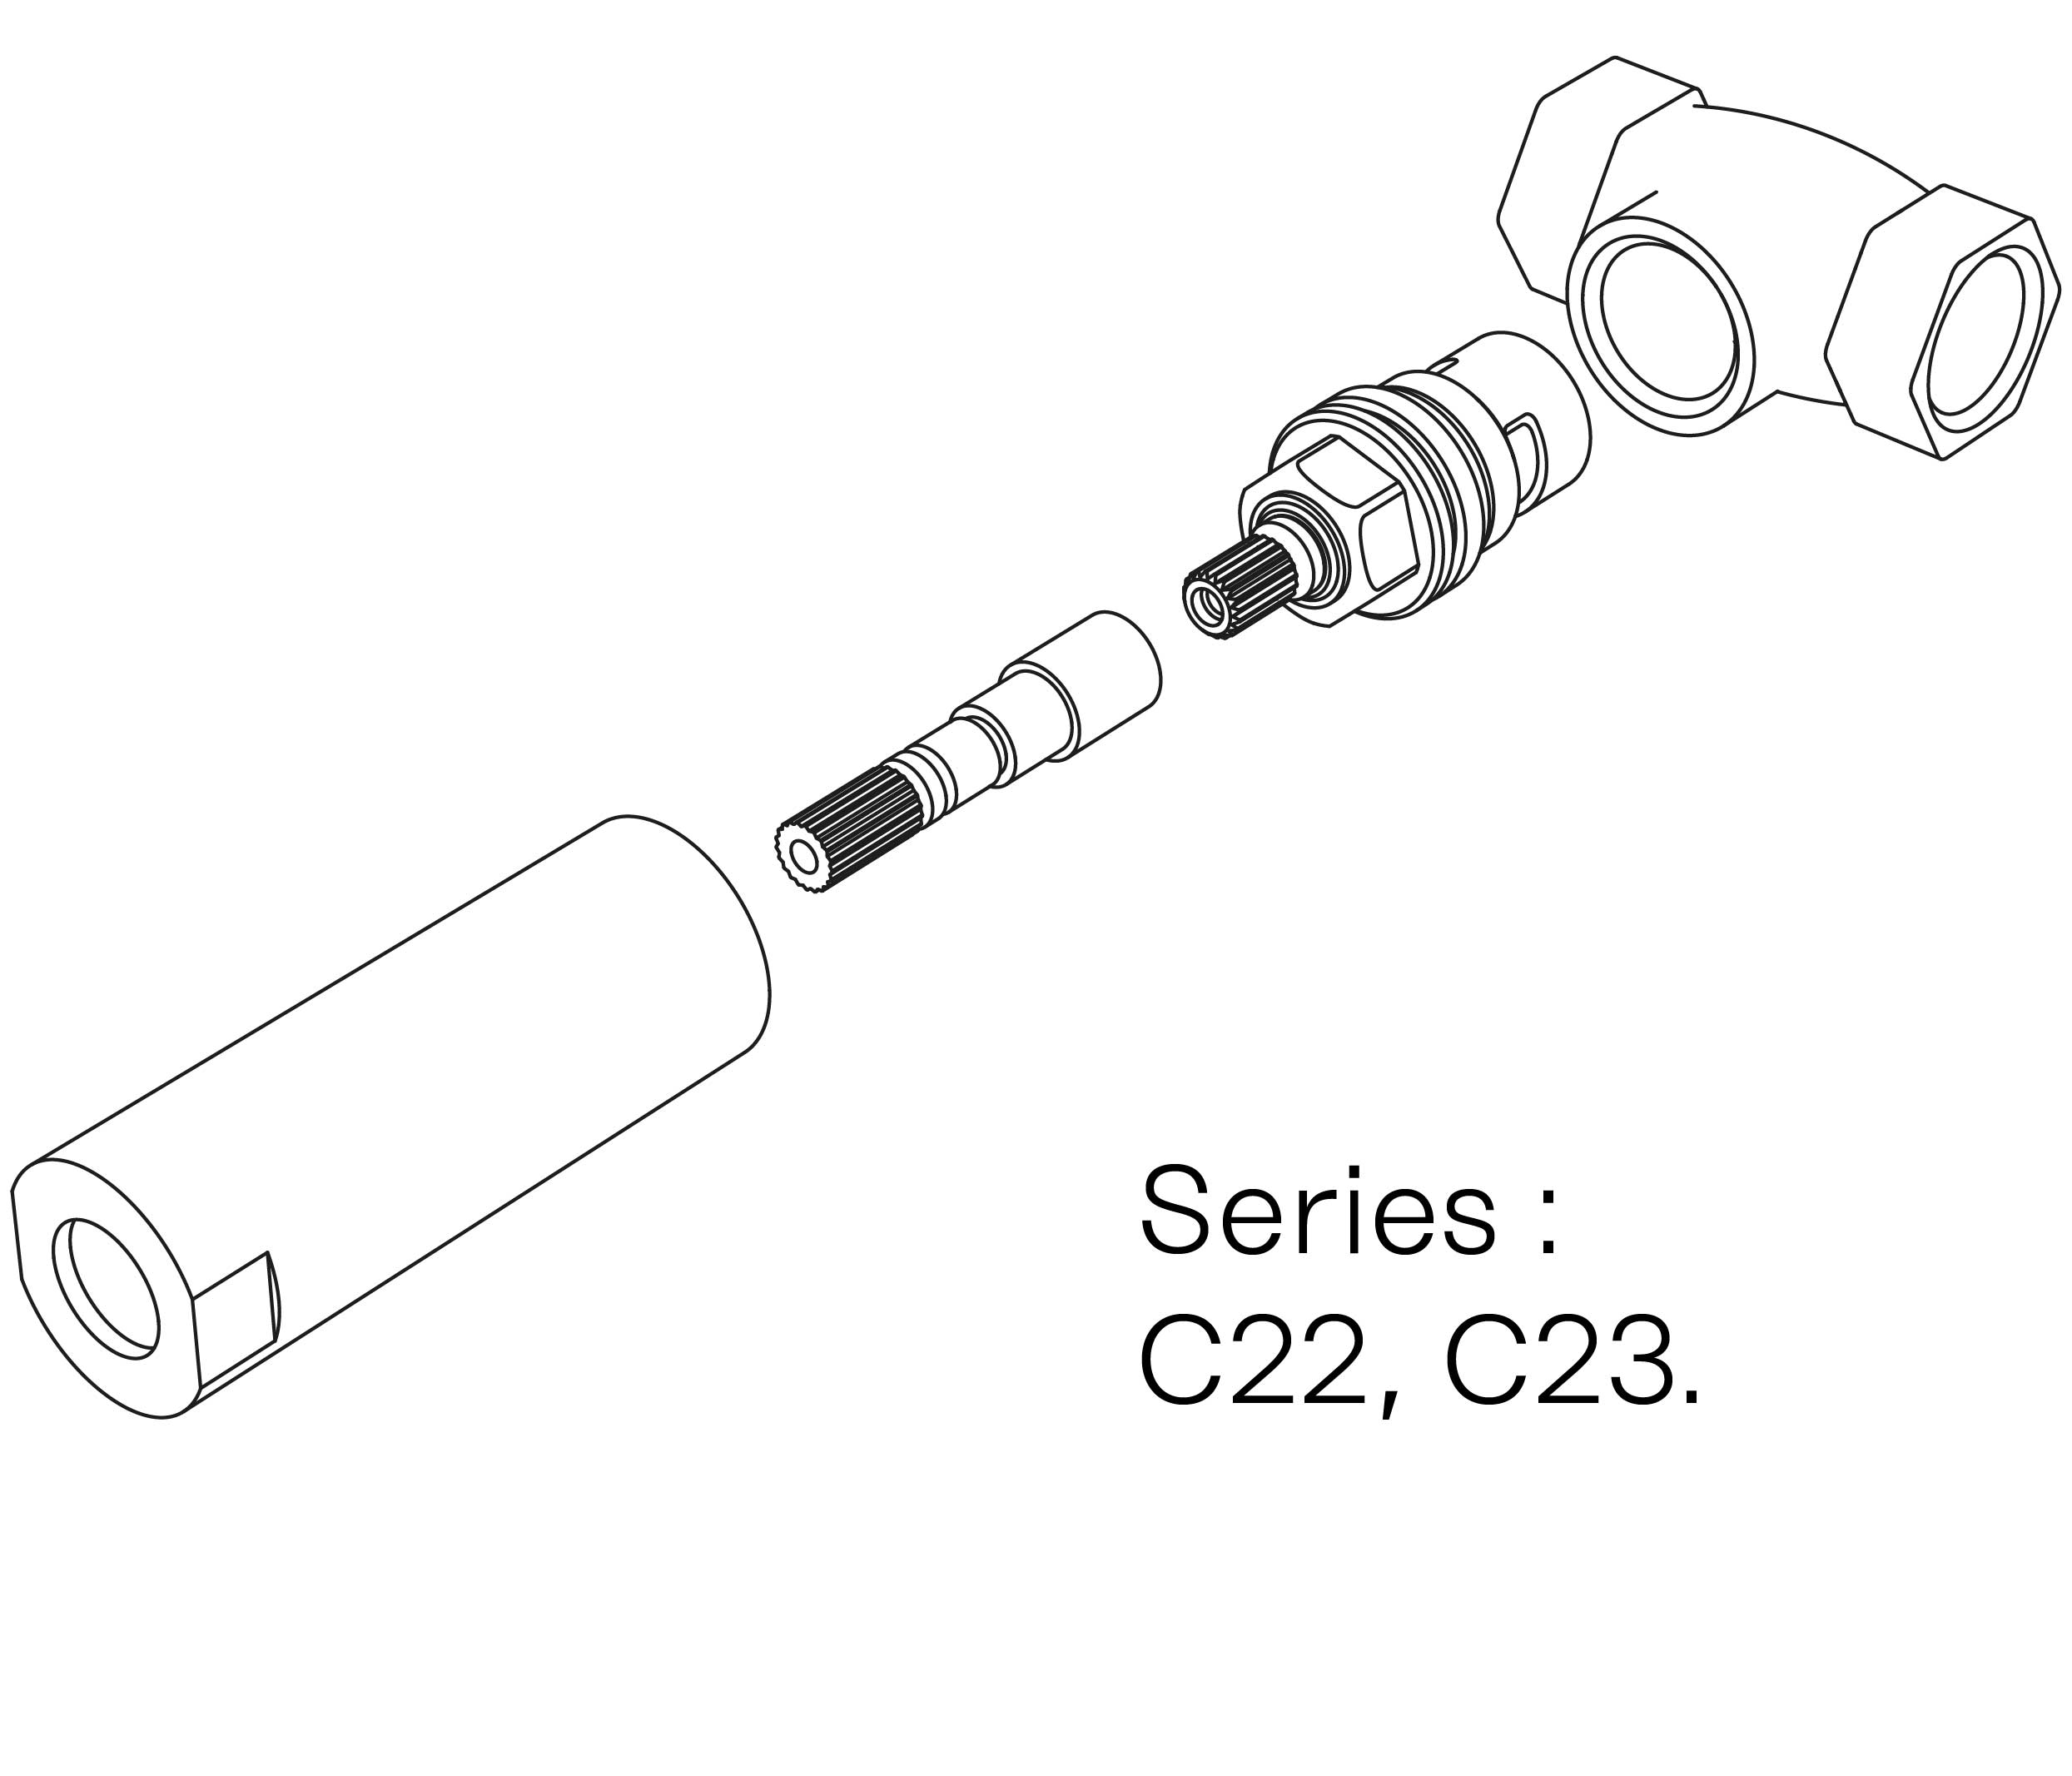 C00-21K29C Kit #1 for W-M valve 3/4″, 1/4 turn, Right